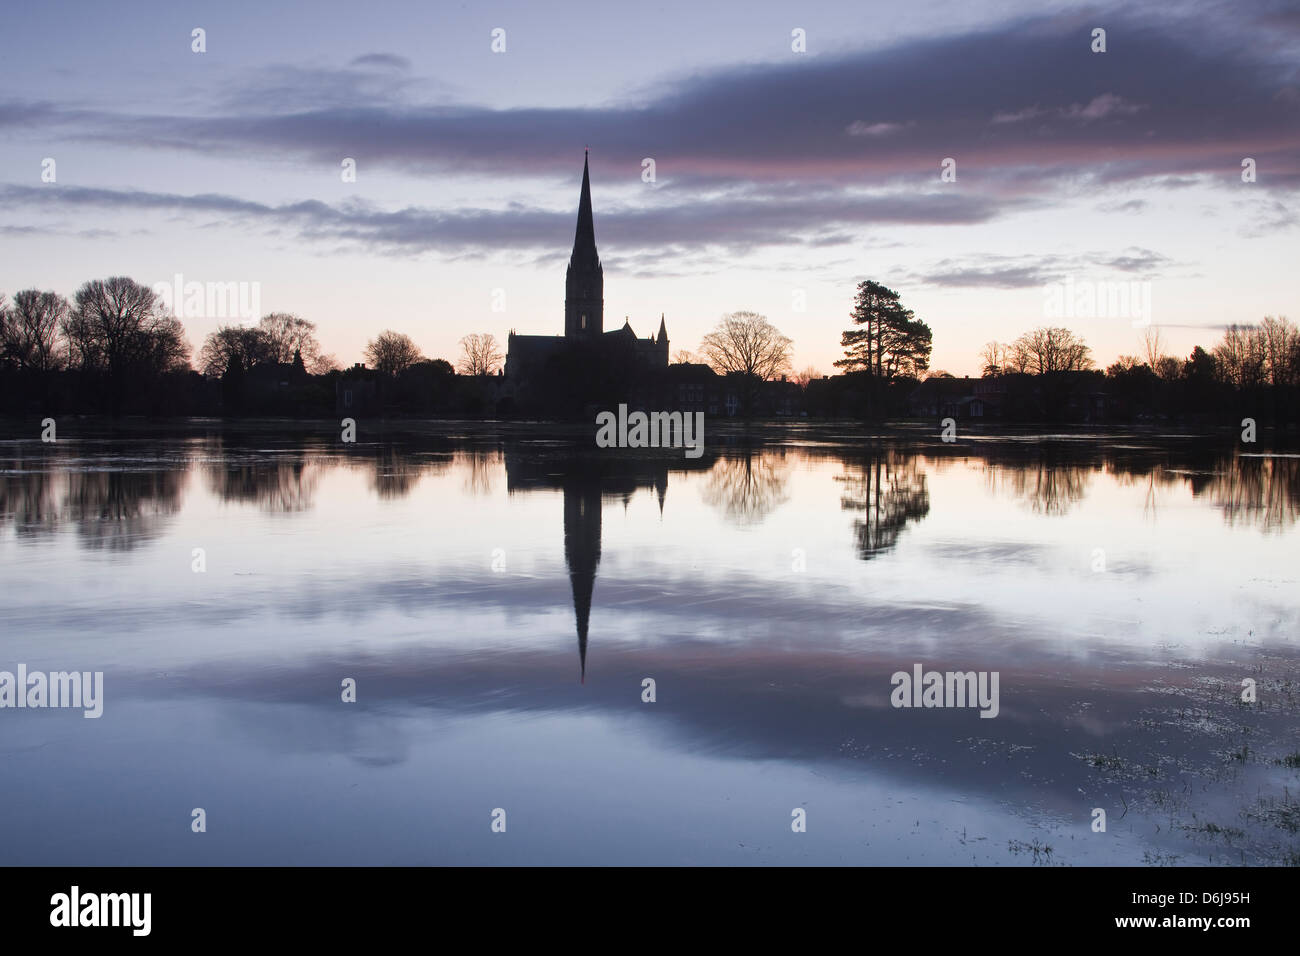 La cathédrale de Salisbury à l'aube reflétant dans l'eau 68 London Ouest inondées Meadows, Salisbury, Wiltshire, Angleterre, Royaume-Uni Banque D'Images